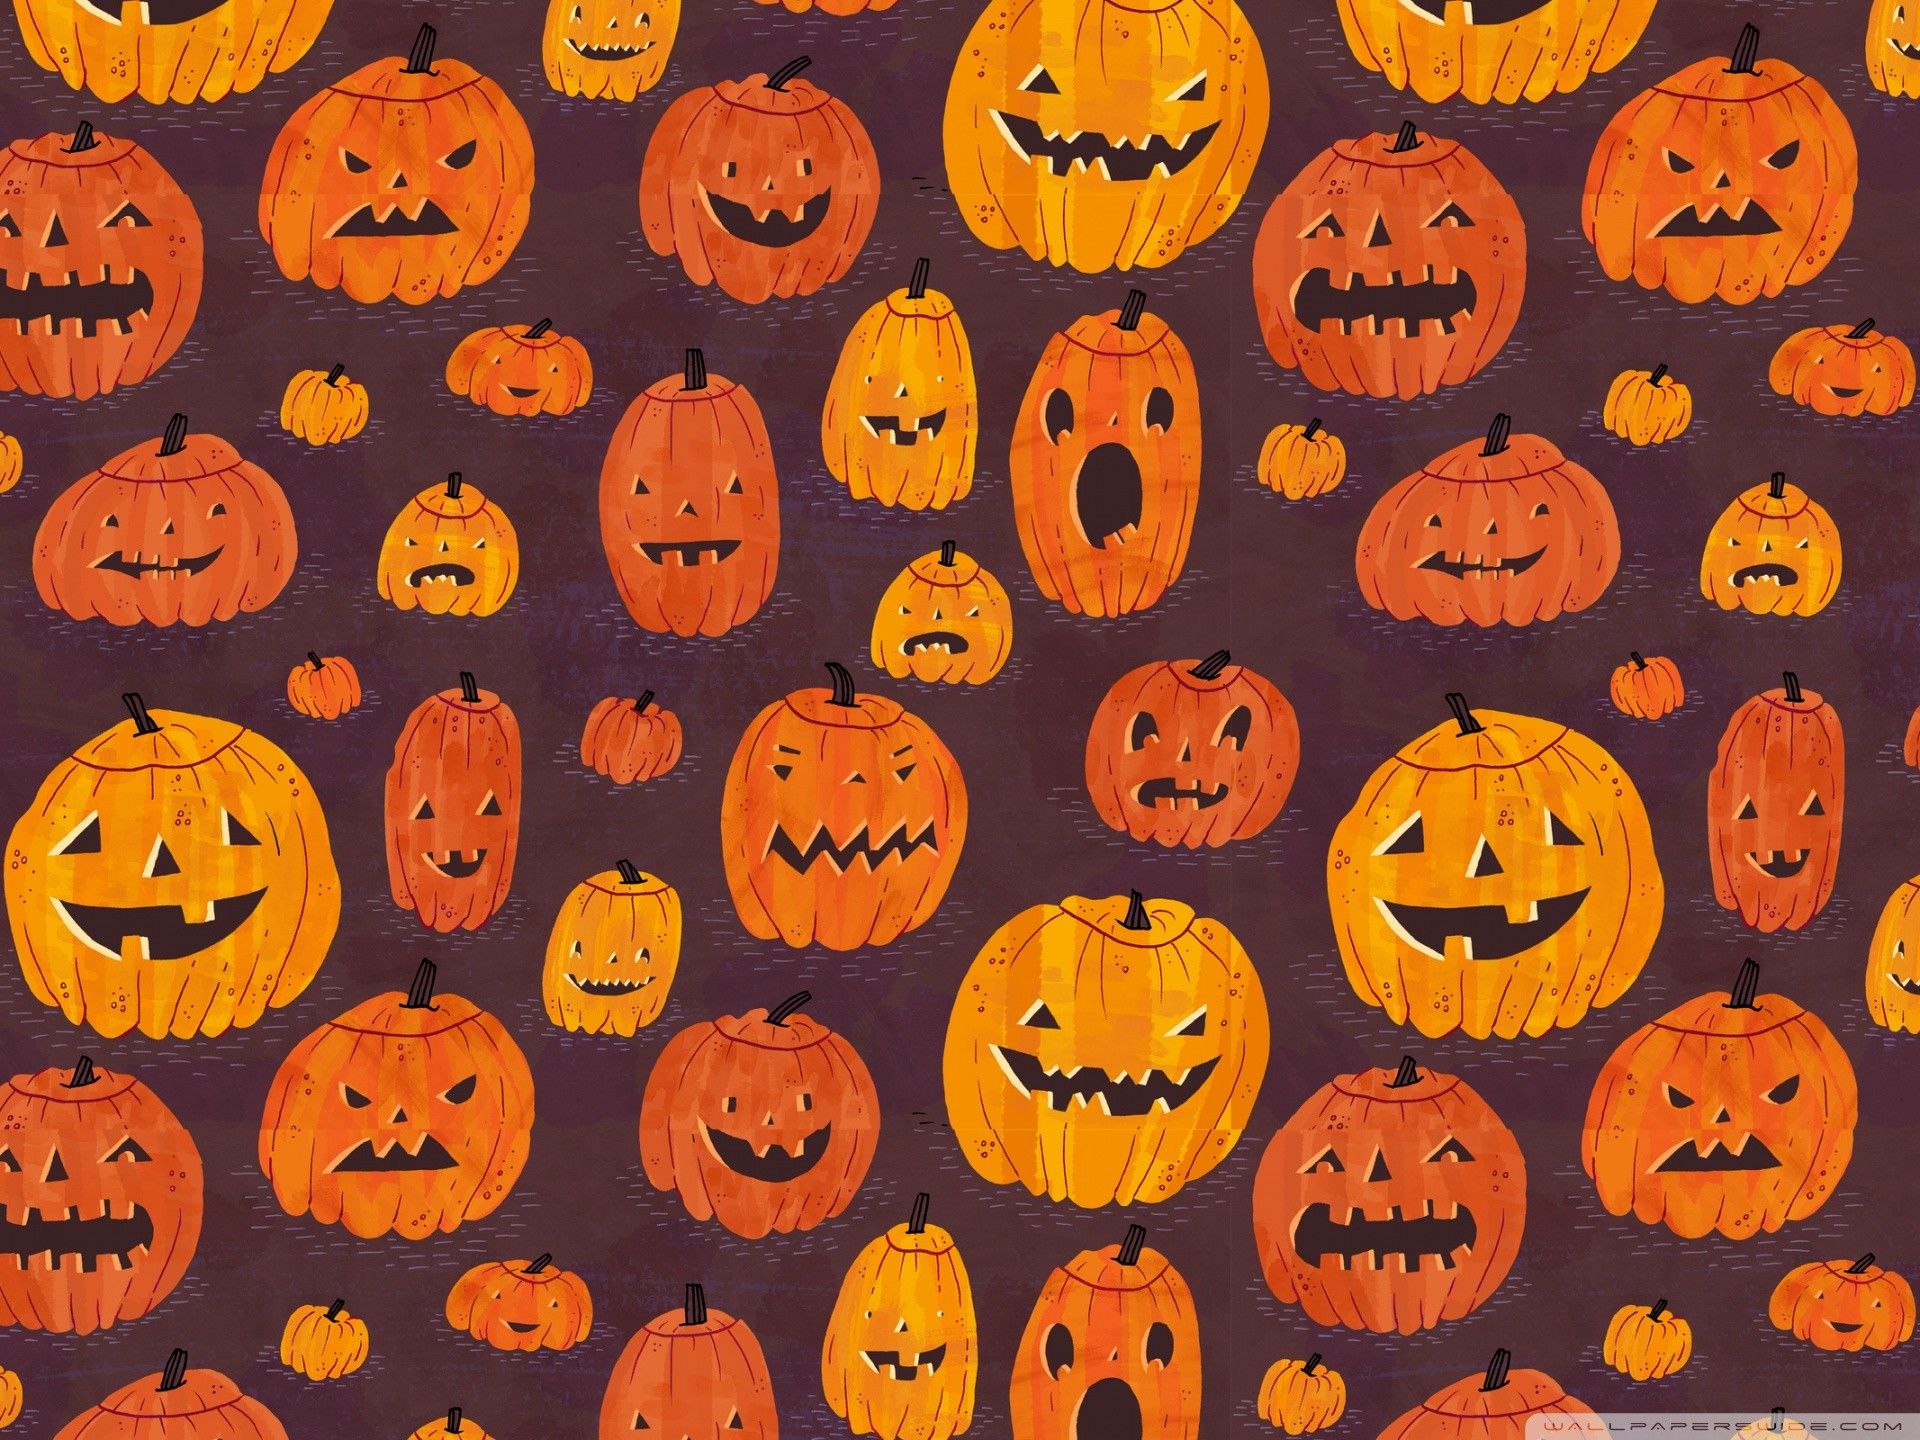 A seamless pattern of pumpkins - Pumpkin